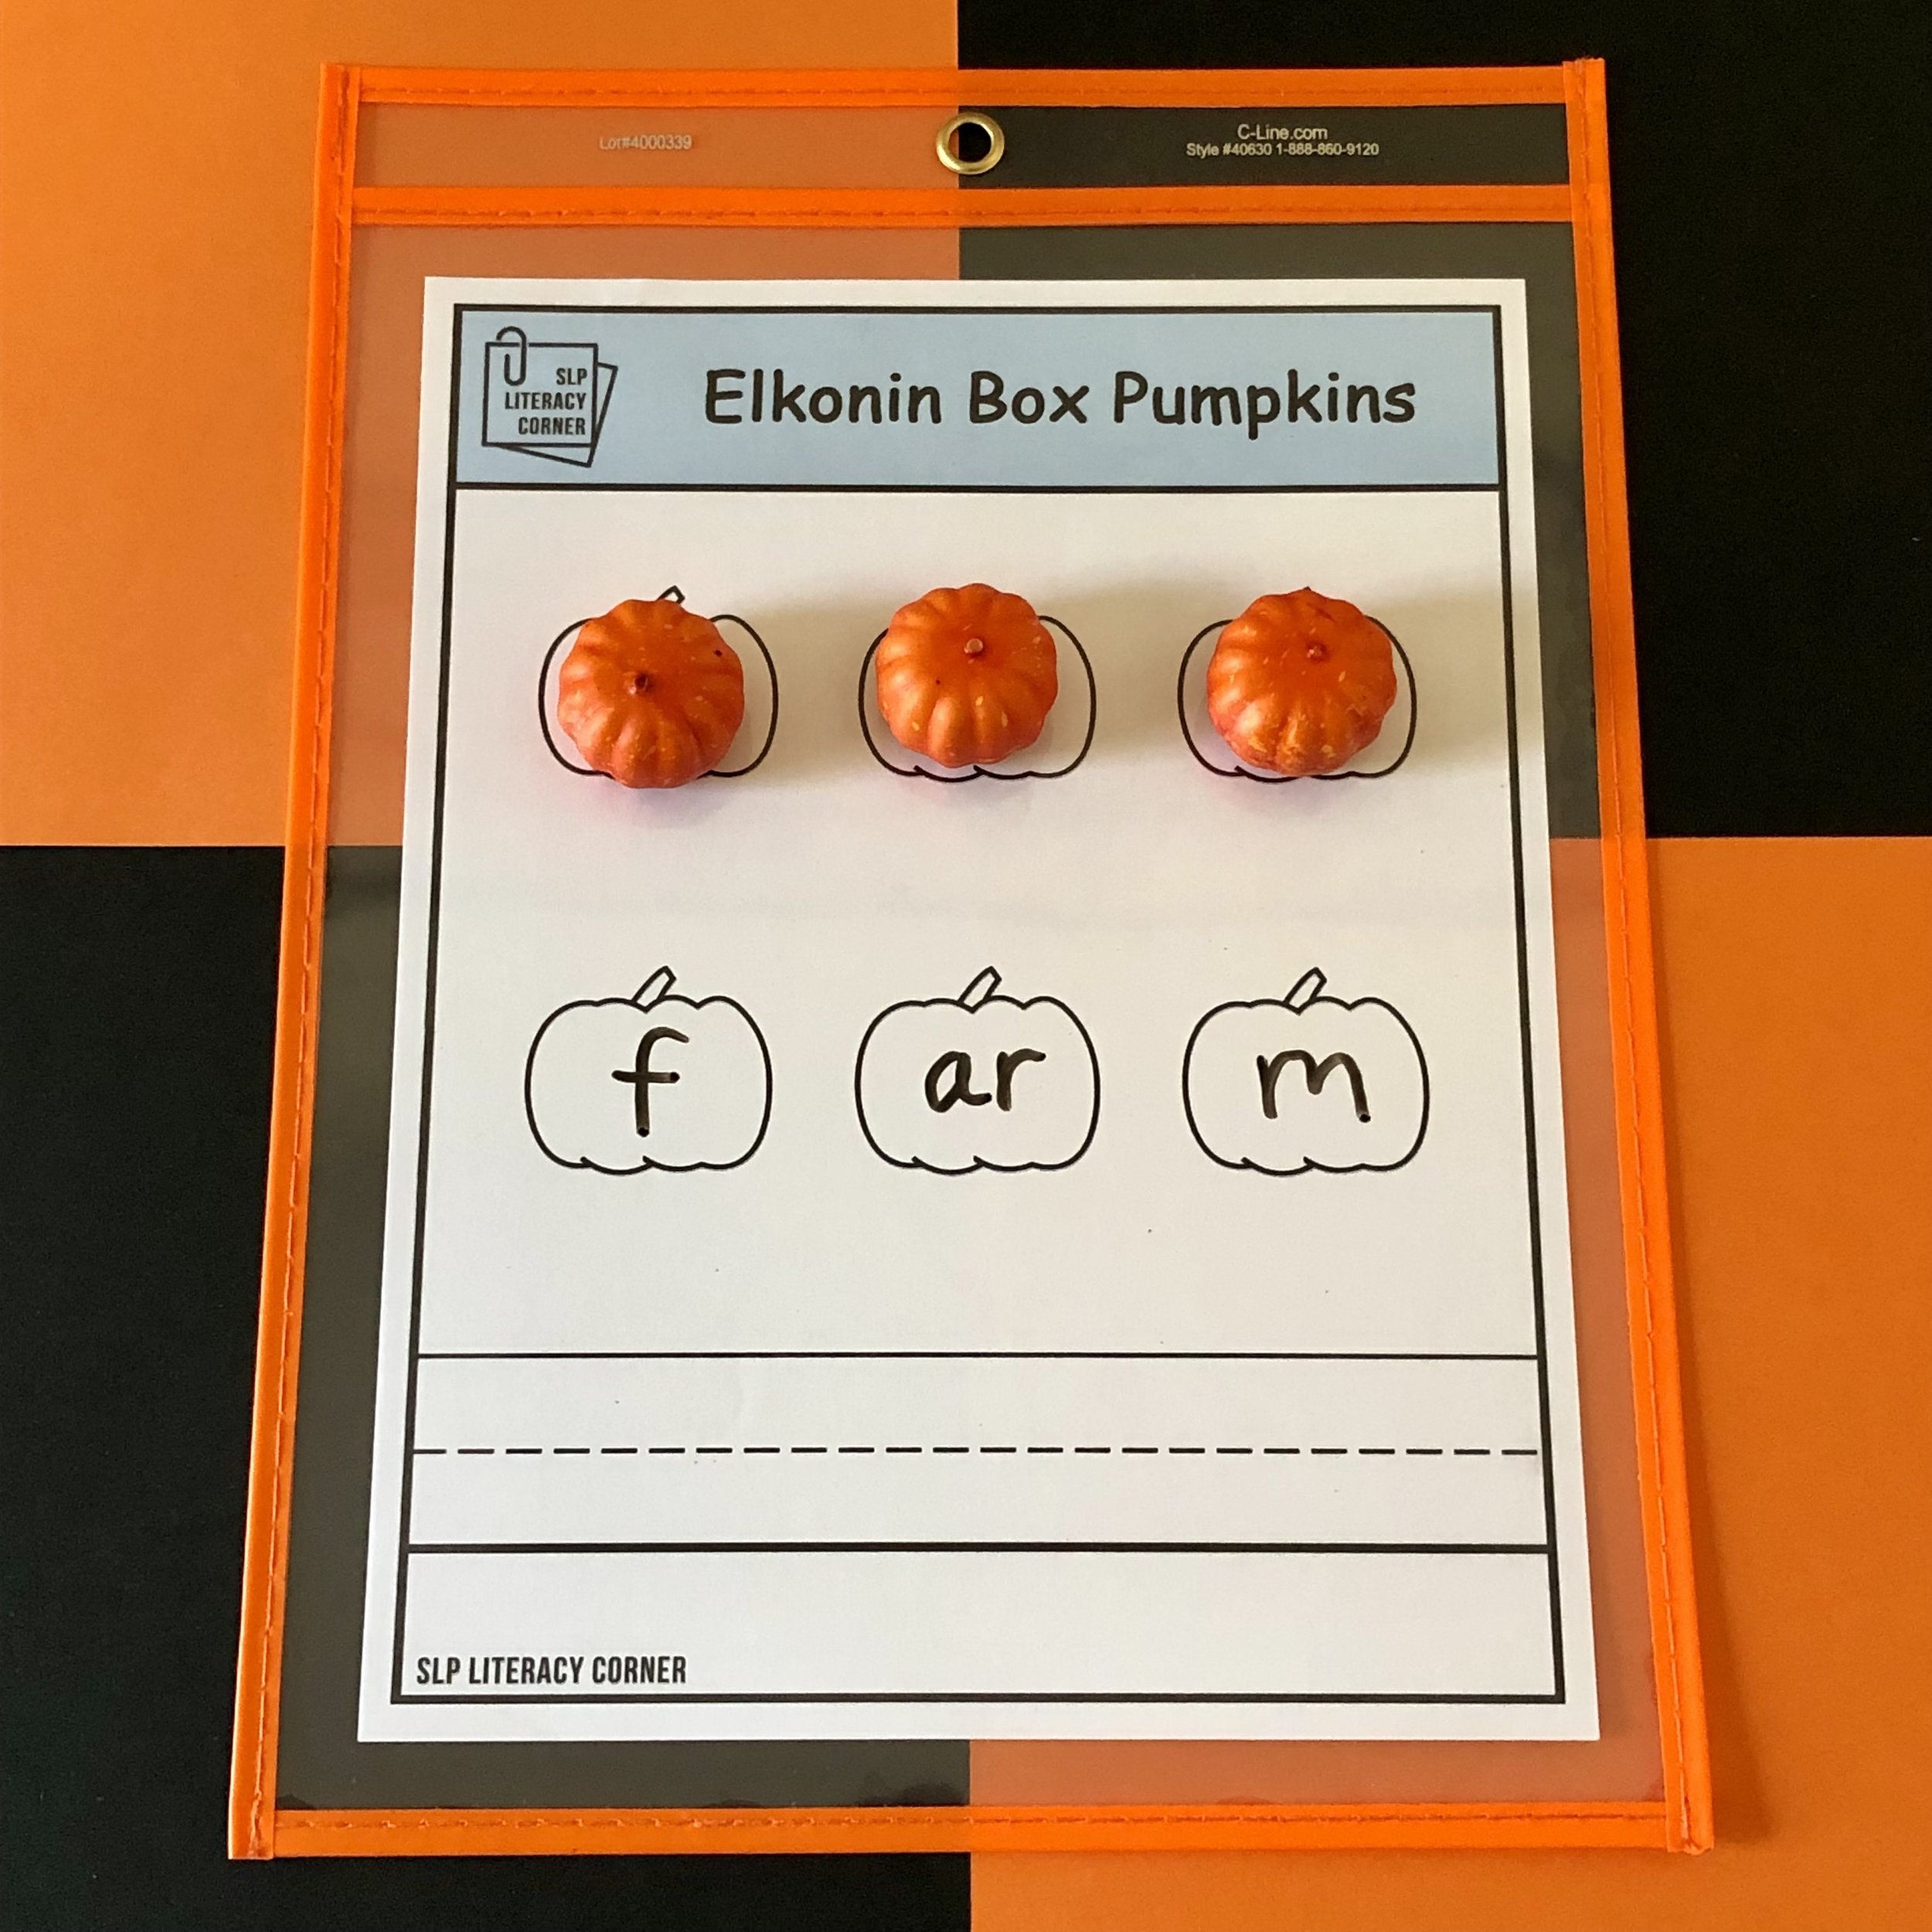 SLP Literacy Corner Elkonin Box Pumpkins 2.jpg